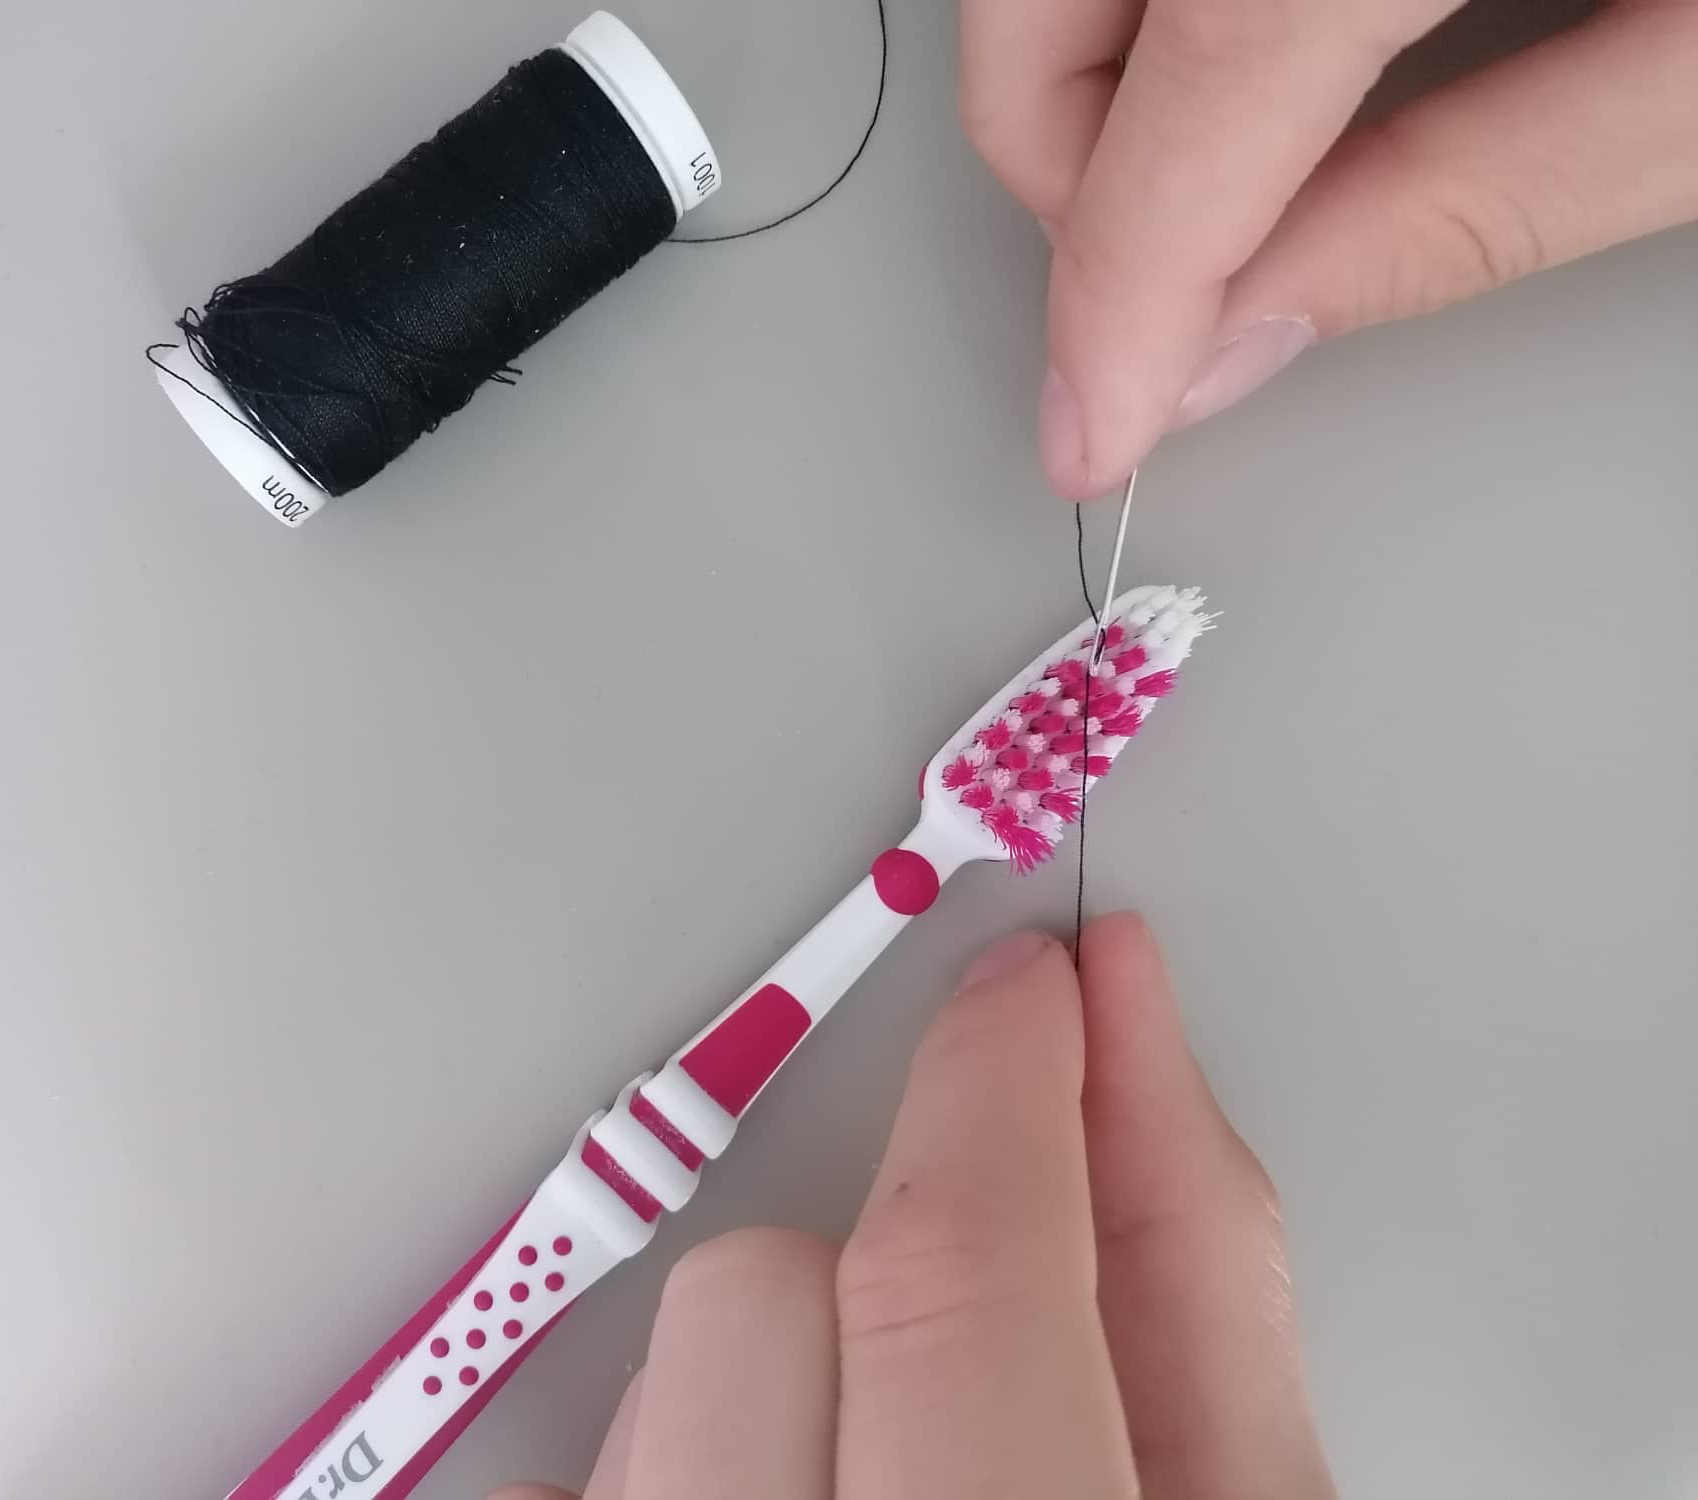 Haushaltstrick, um den Faden mit einer Zahnbürste in das Nadelöhr einzufädeln